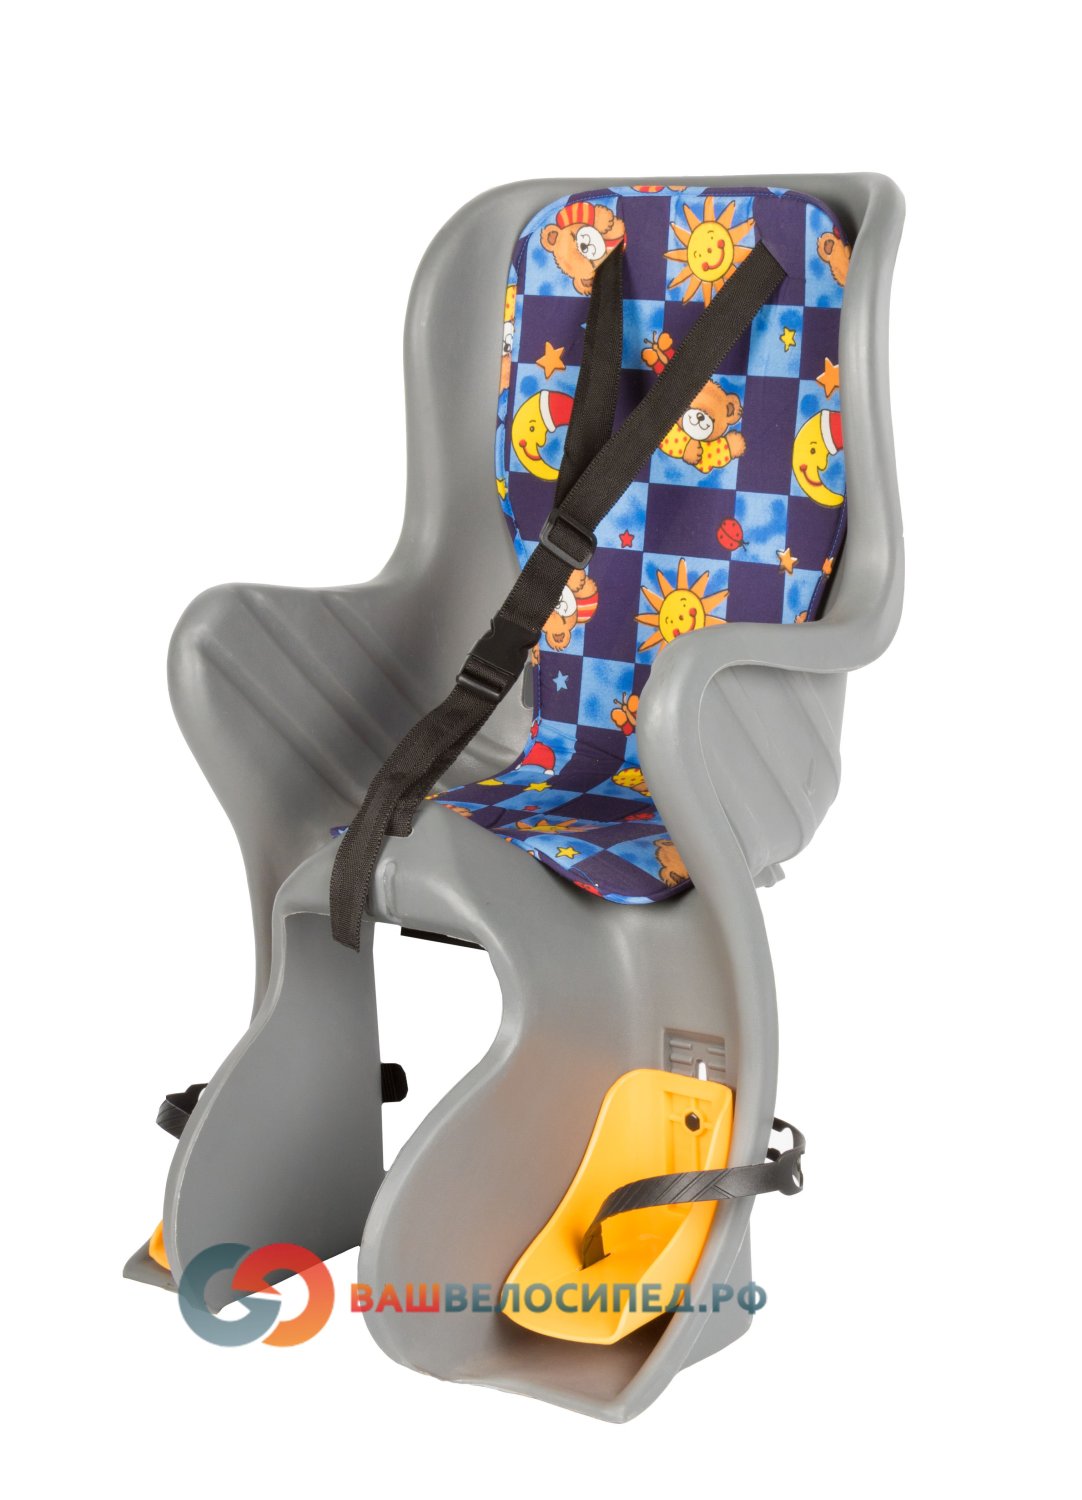 фото Детское велокресло на багажник m-wave sf-928l серое до 7 лет/22кг 6-639156